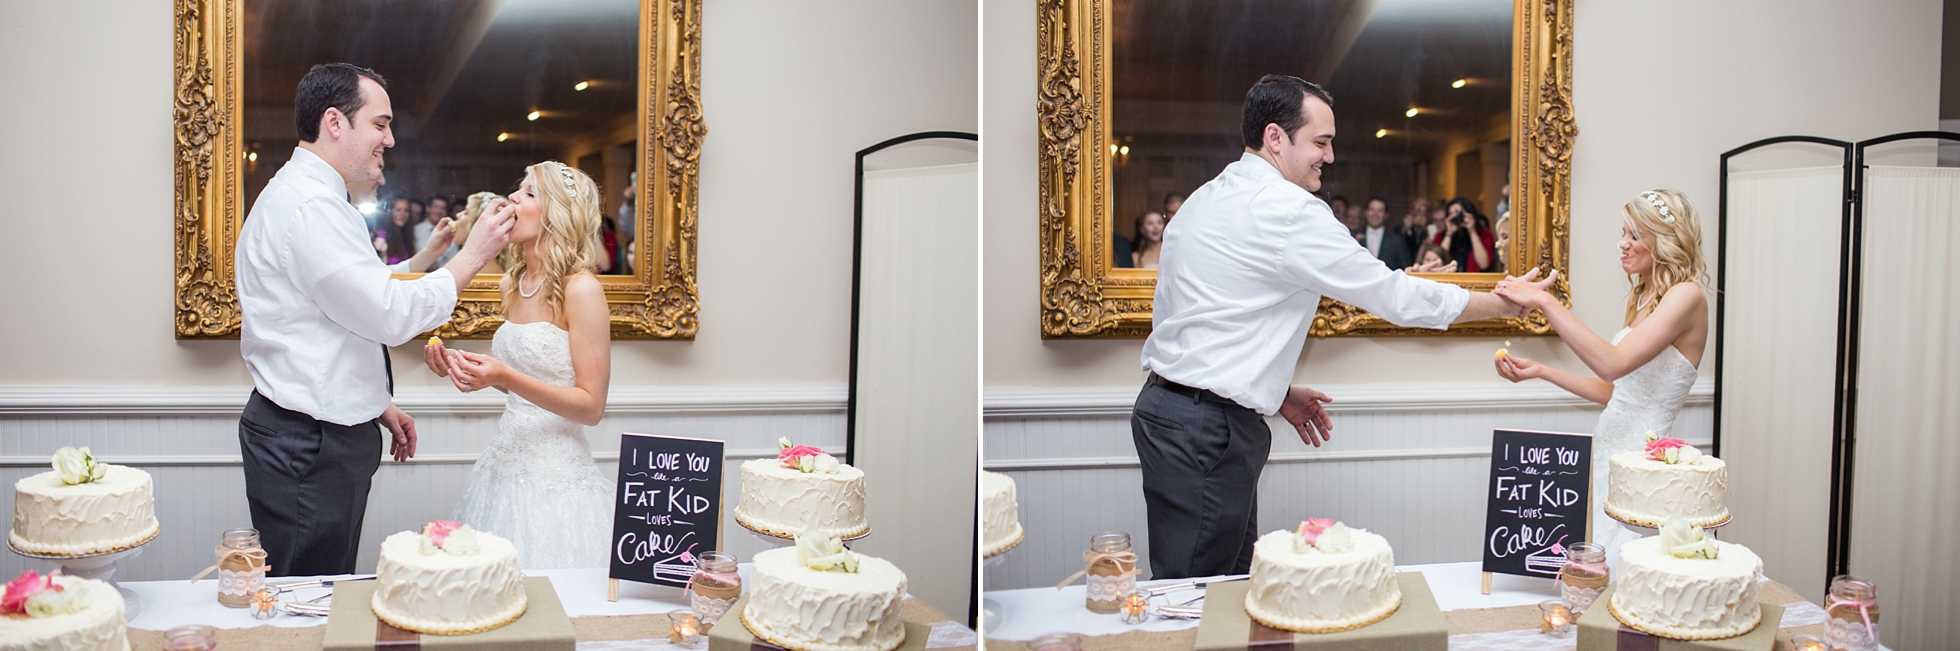 cake eating wedding